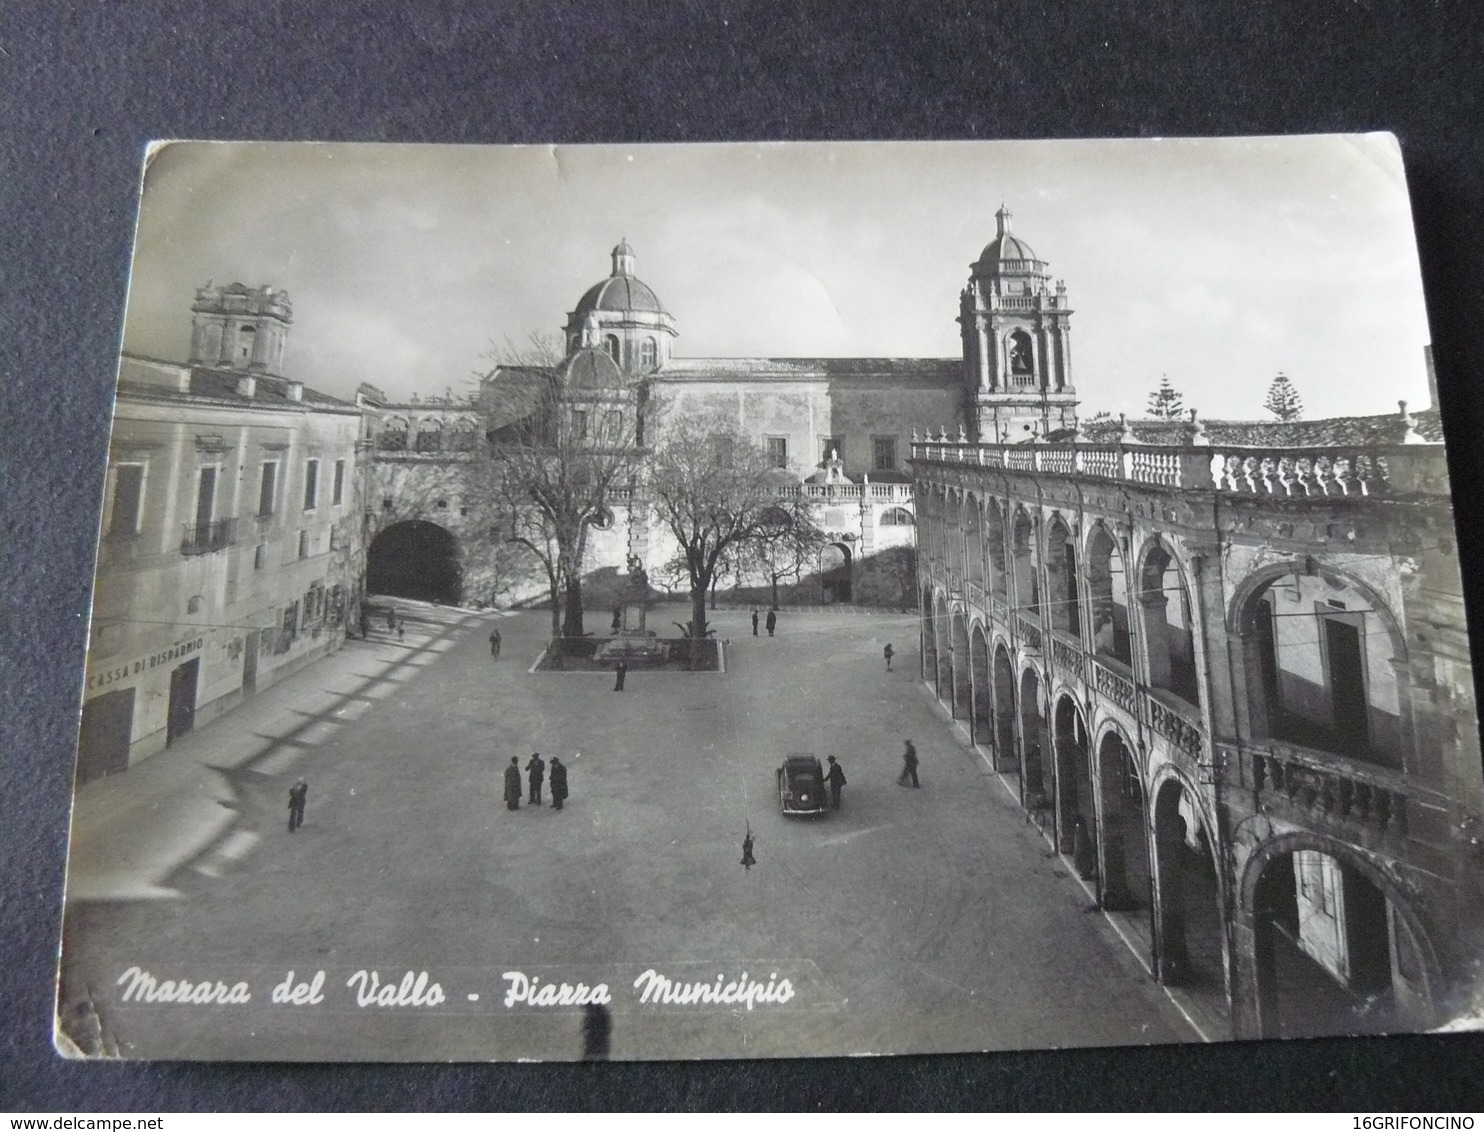 1952 OLD BEAUTIFUL POSTCARD OF MAZARA DEL VALLO .GO IN ITALY.VECCHIA BELLA VIAGGIATA DI MAZARA DEL VALLO - Mazara Del Vallo